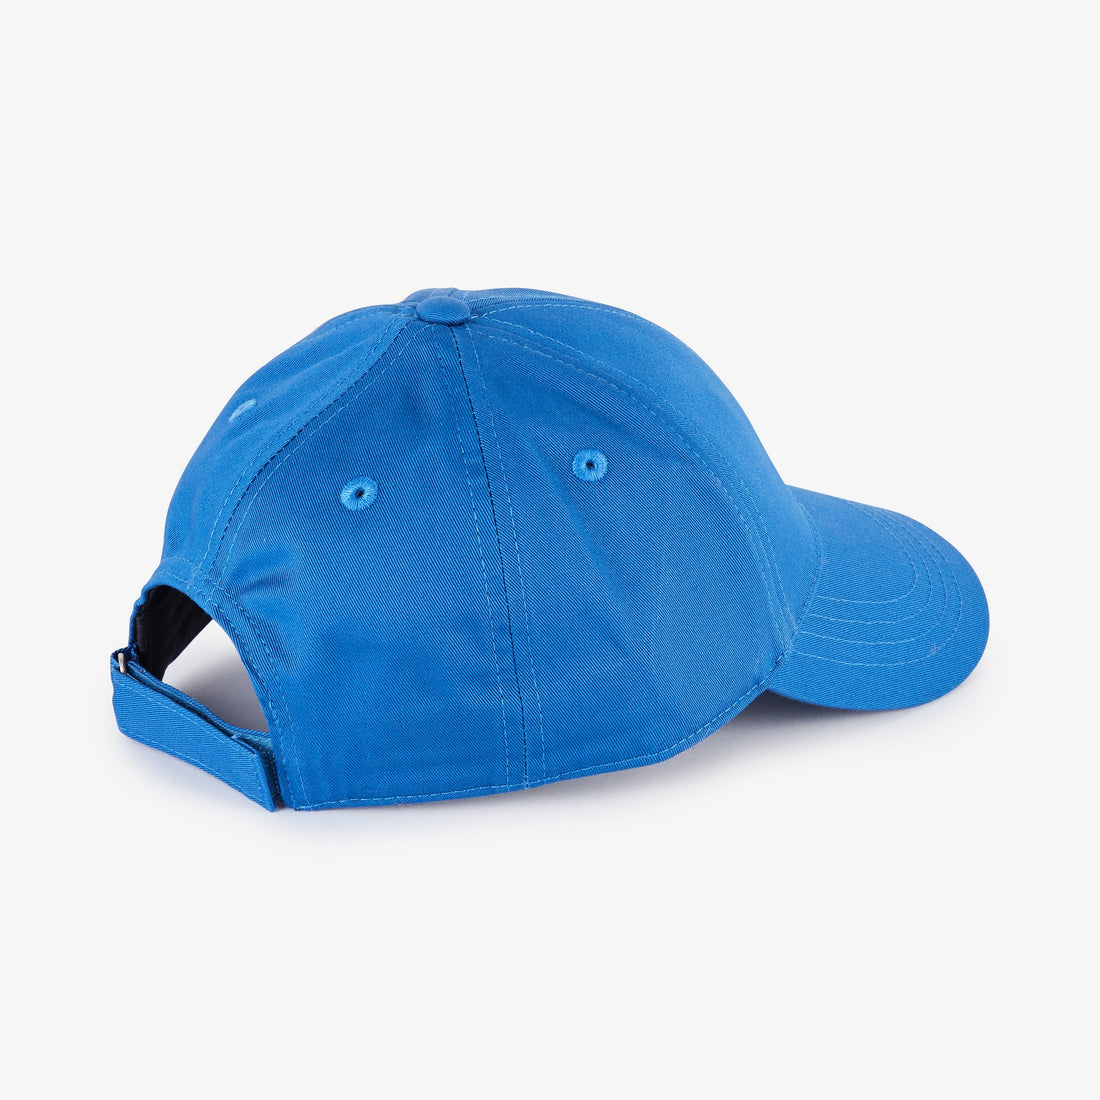 plain-blue-baseball-cap_e23chaca0001_blm31_02